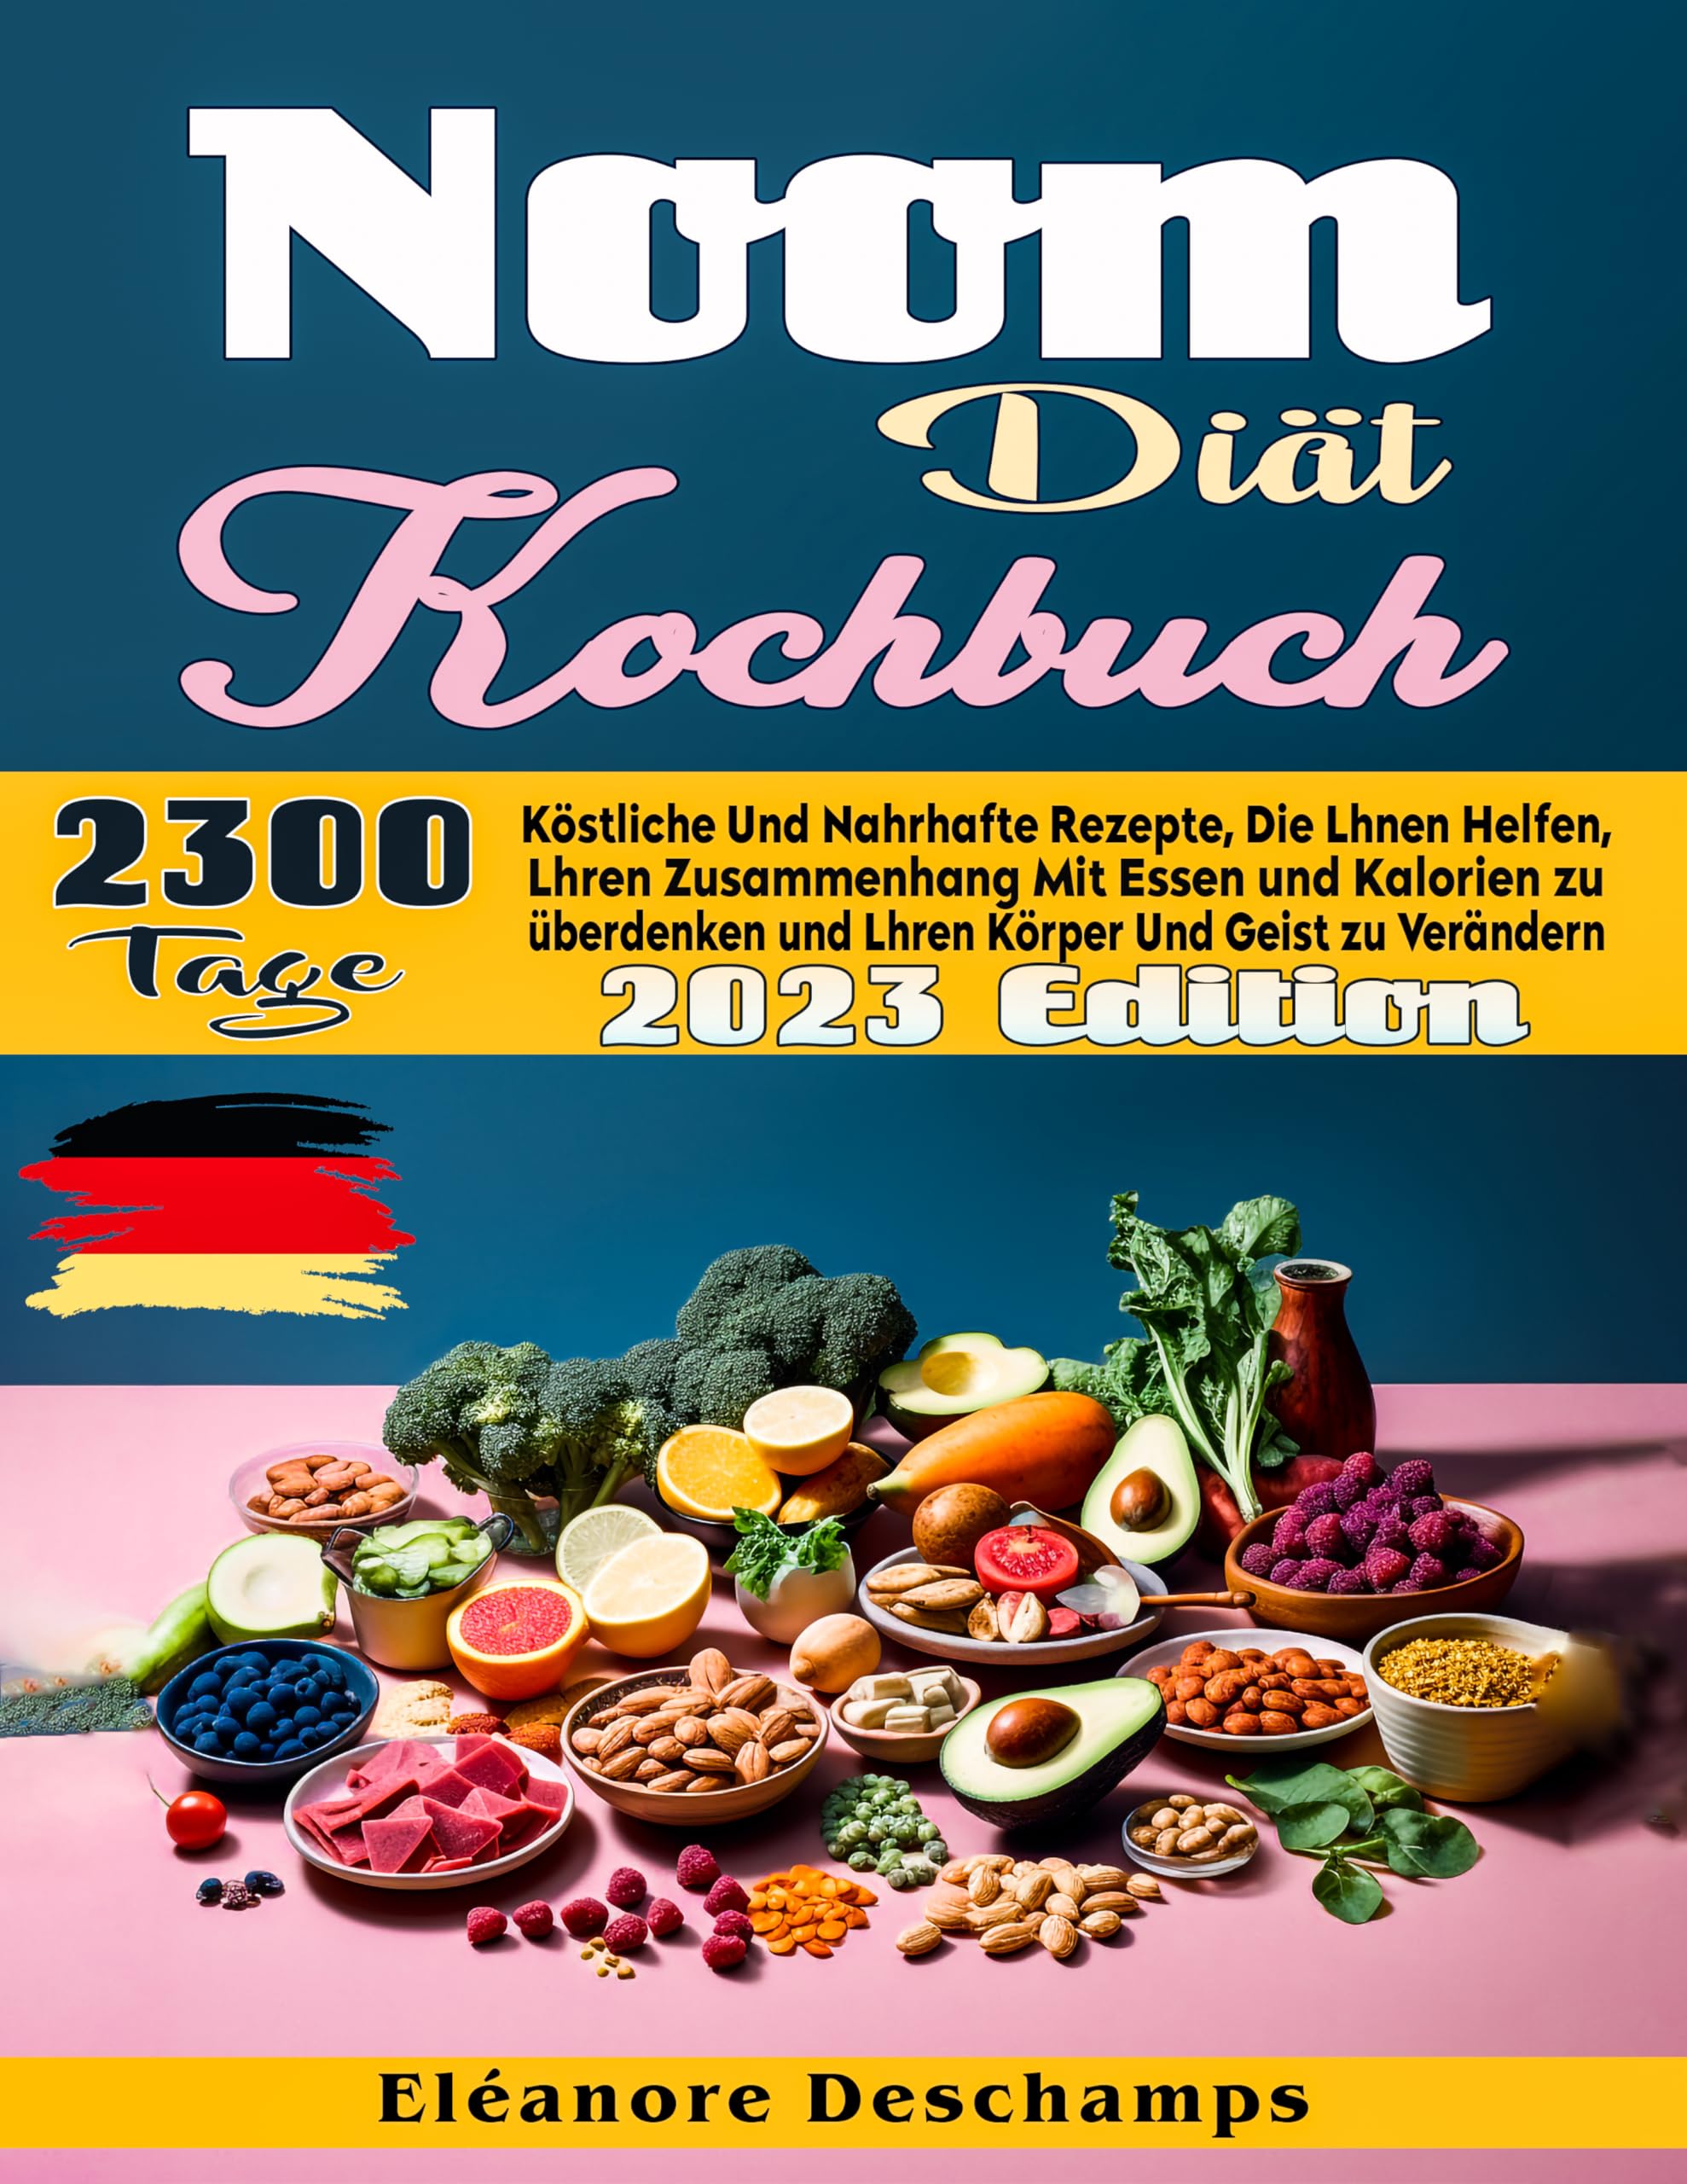 Noom-Diät Kochbuch: 2300 Tage köstliche und nahrhafte Rezepte, die Ihnen helfen, Ihren Zusammenhang mit Essen und Kalorien zu überdenken und Ihren Körper und Geist zu verändern (German Edition)